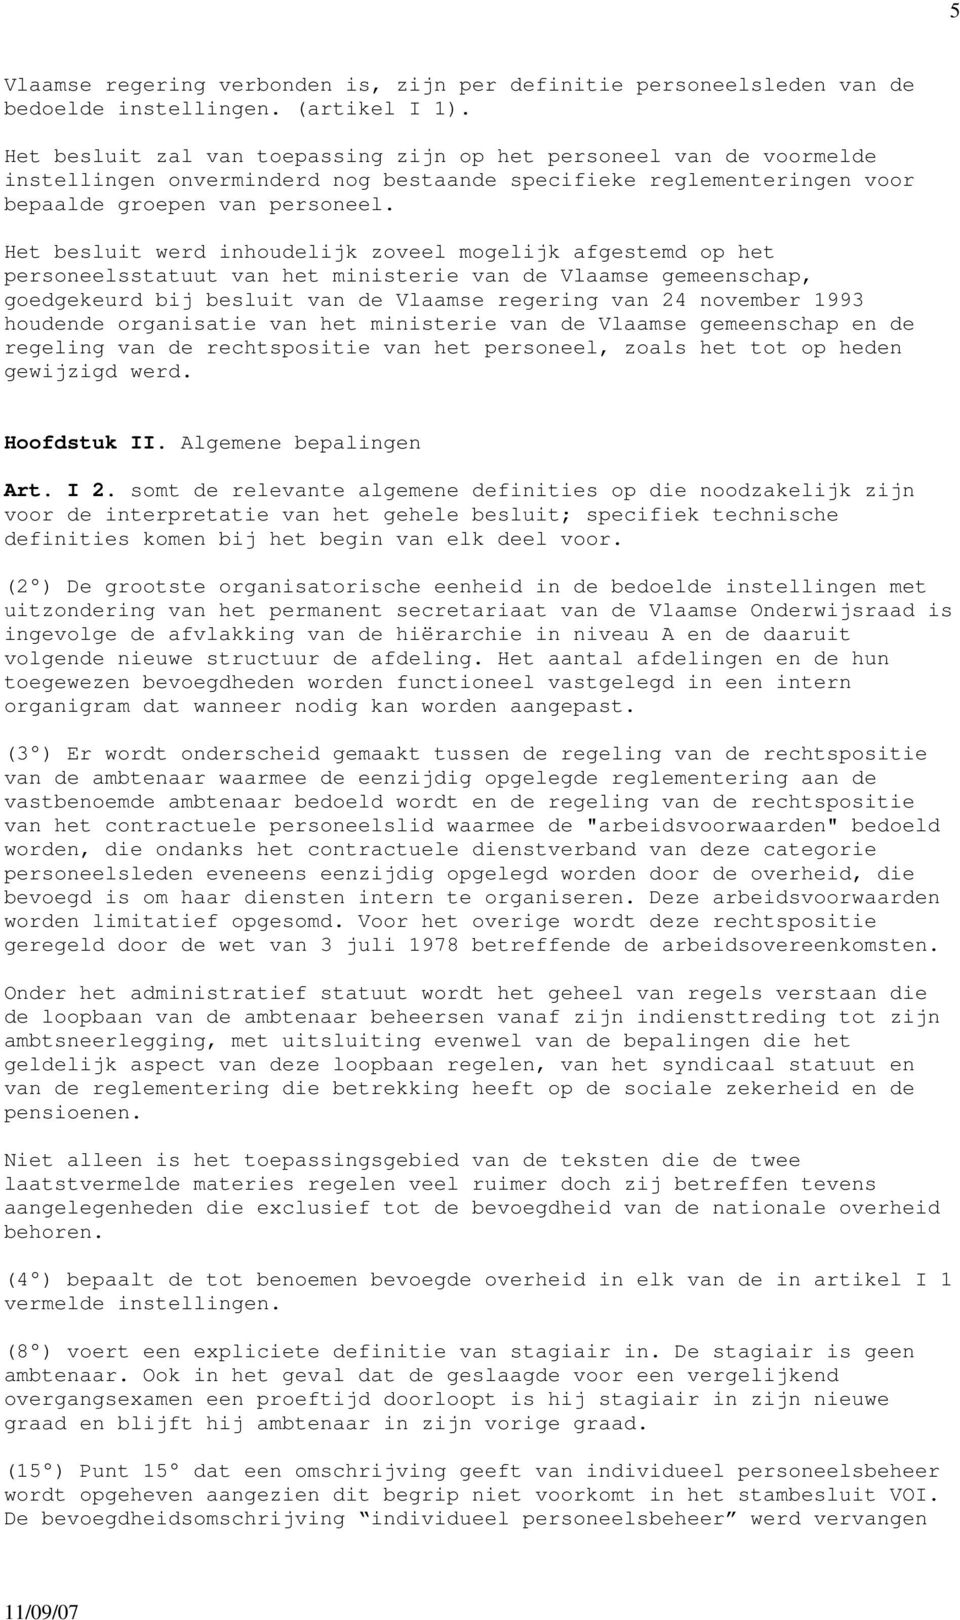 Het besluit werd inhoudelijk zoveel mogelijk afgestemd op het personeelsstatuut van het ministerie van de Vlaamse gemeenschap, goedgekeurd bij besluit van de Vlaamse regering van 24 november 1993